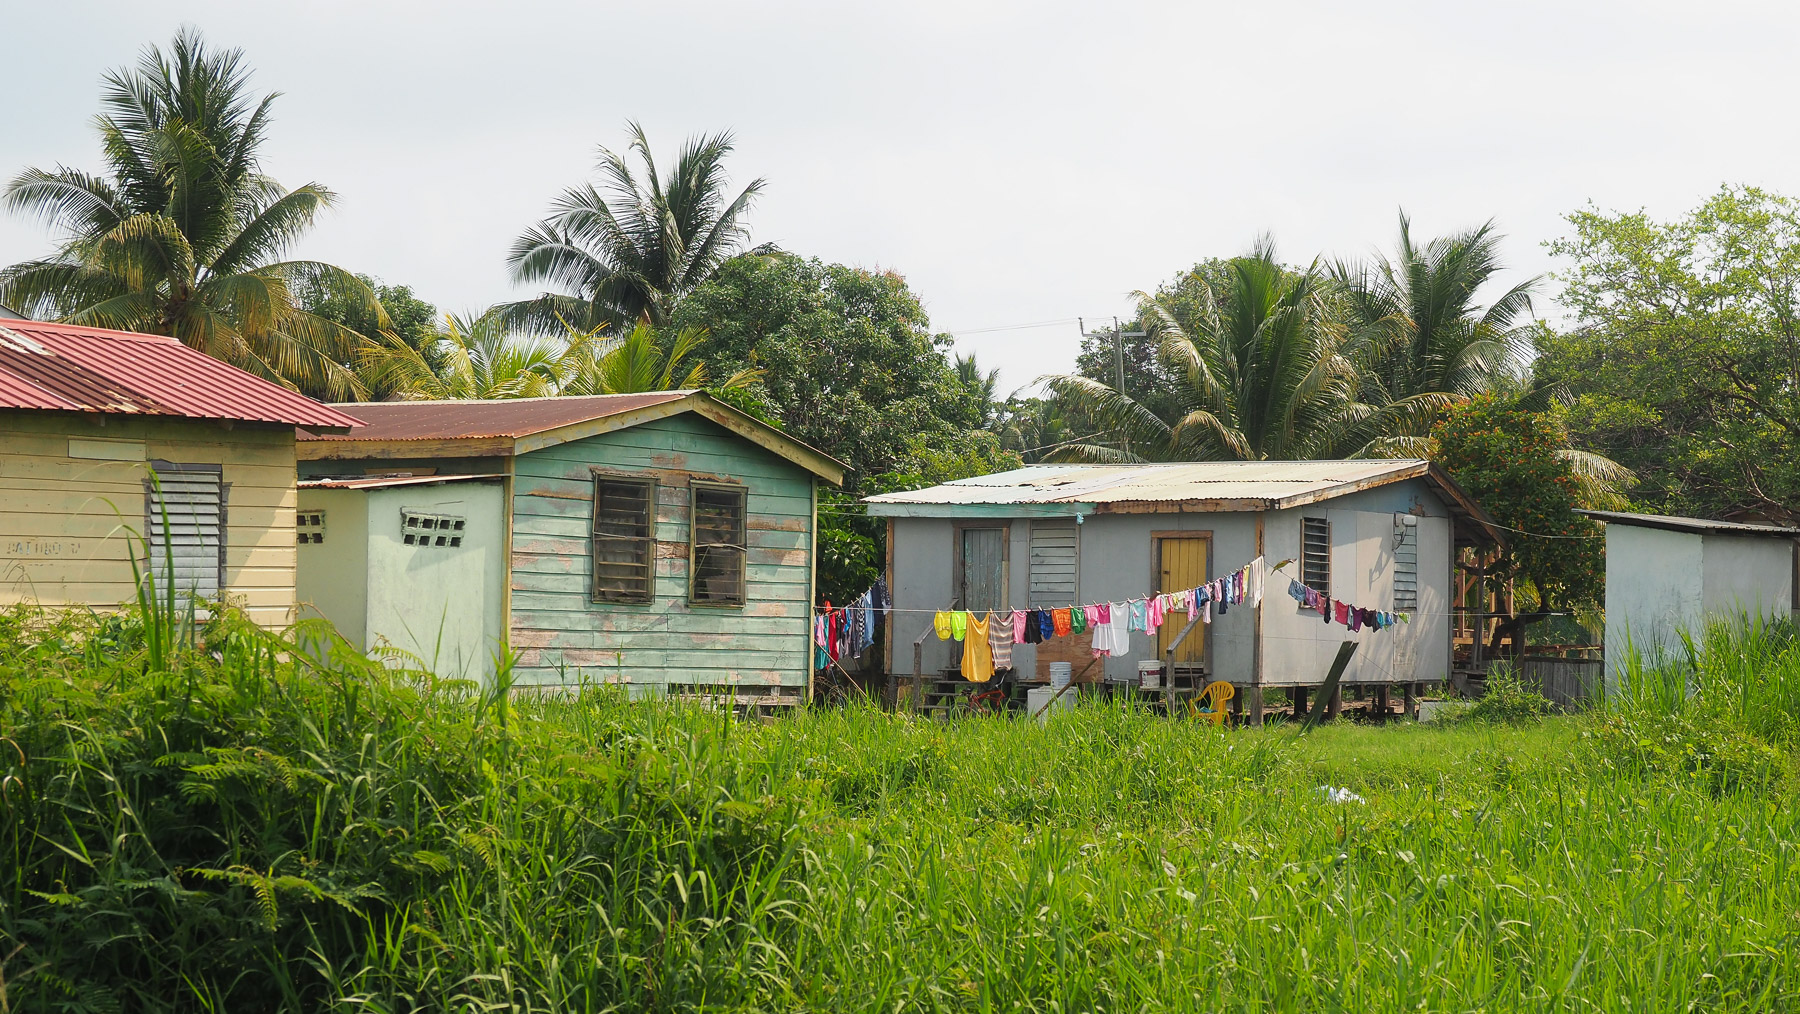 Einfache, saubere Häuschen in Belize